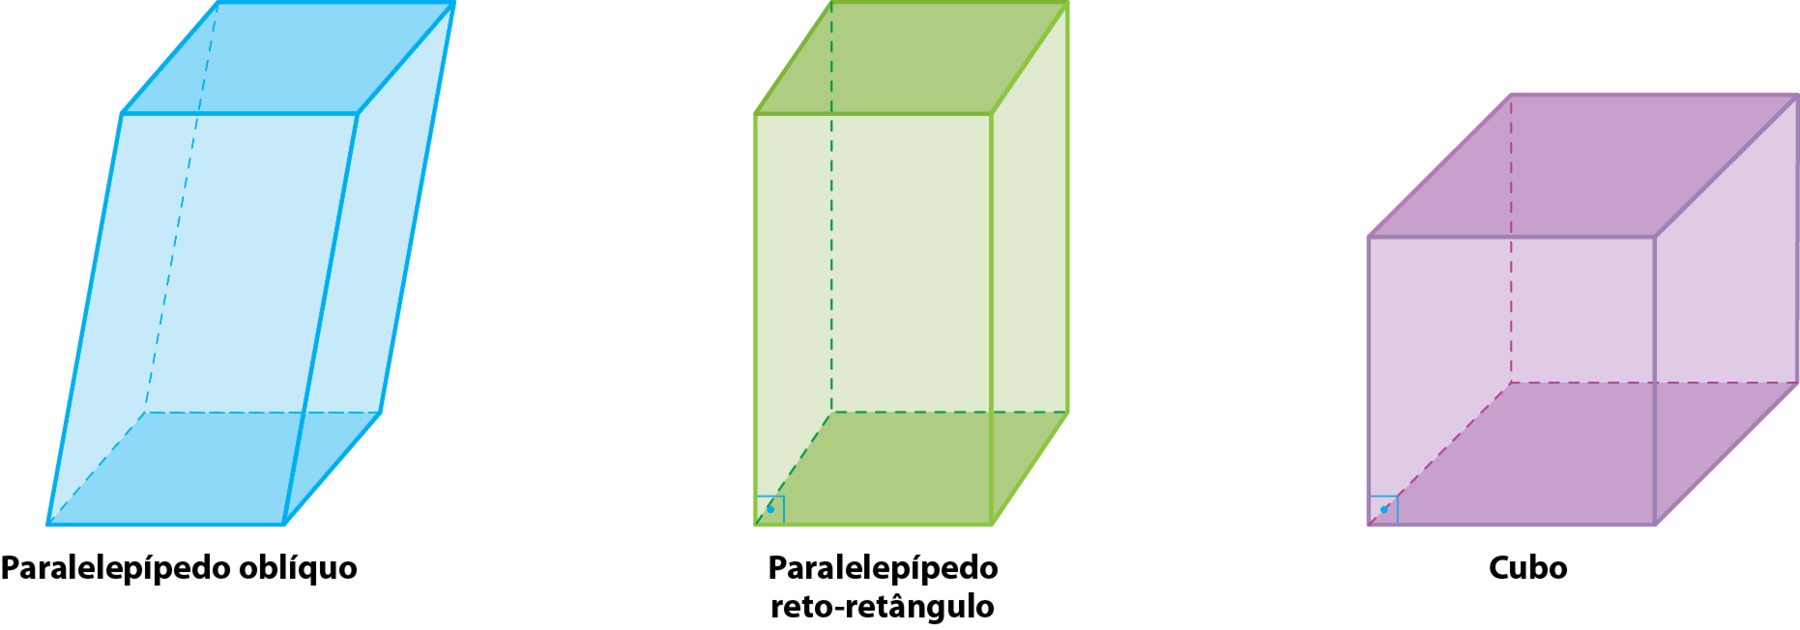 Ilustração. Paralelepípedo oblíquo. Poliedro formado por duas bases quadradas e quatro quadriláteros nas faces laterais.  As arestas laterais não formam ângulo reto com as bases.   Ilustração. paralelepípedo reto-retângulo. Poliedro formado por duas bases quadradas e quatro retângulos nas faces laterais. As arestas laterais formam ângulo reto com as bases.   Ilustração. Cubo. Poliedro formado seis quadrados. As arestas laterais formam ângulo reto com as bases.